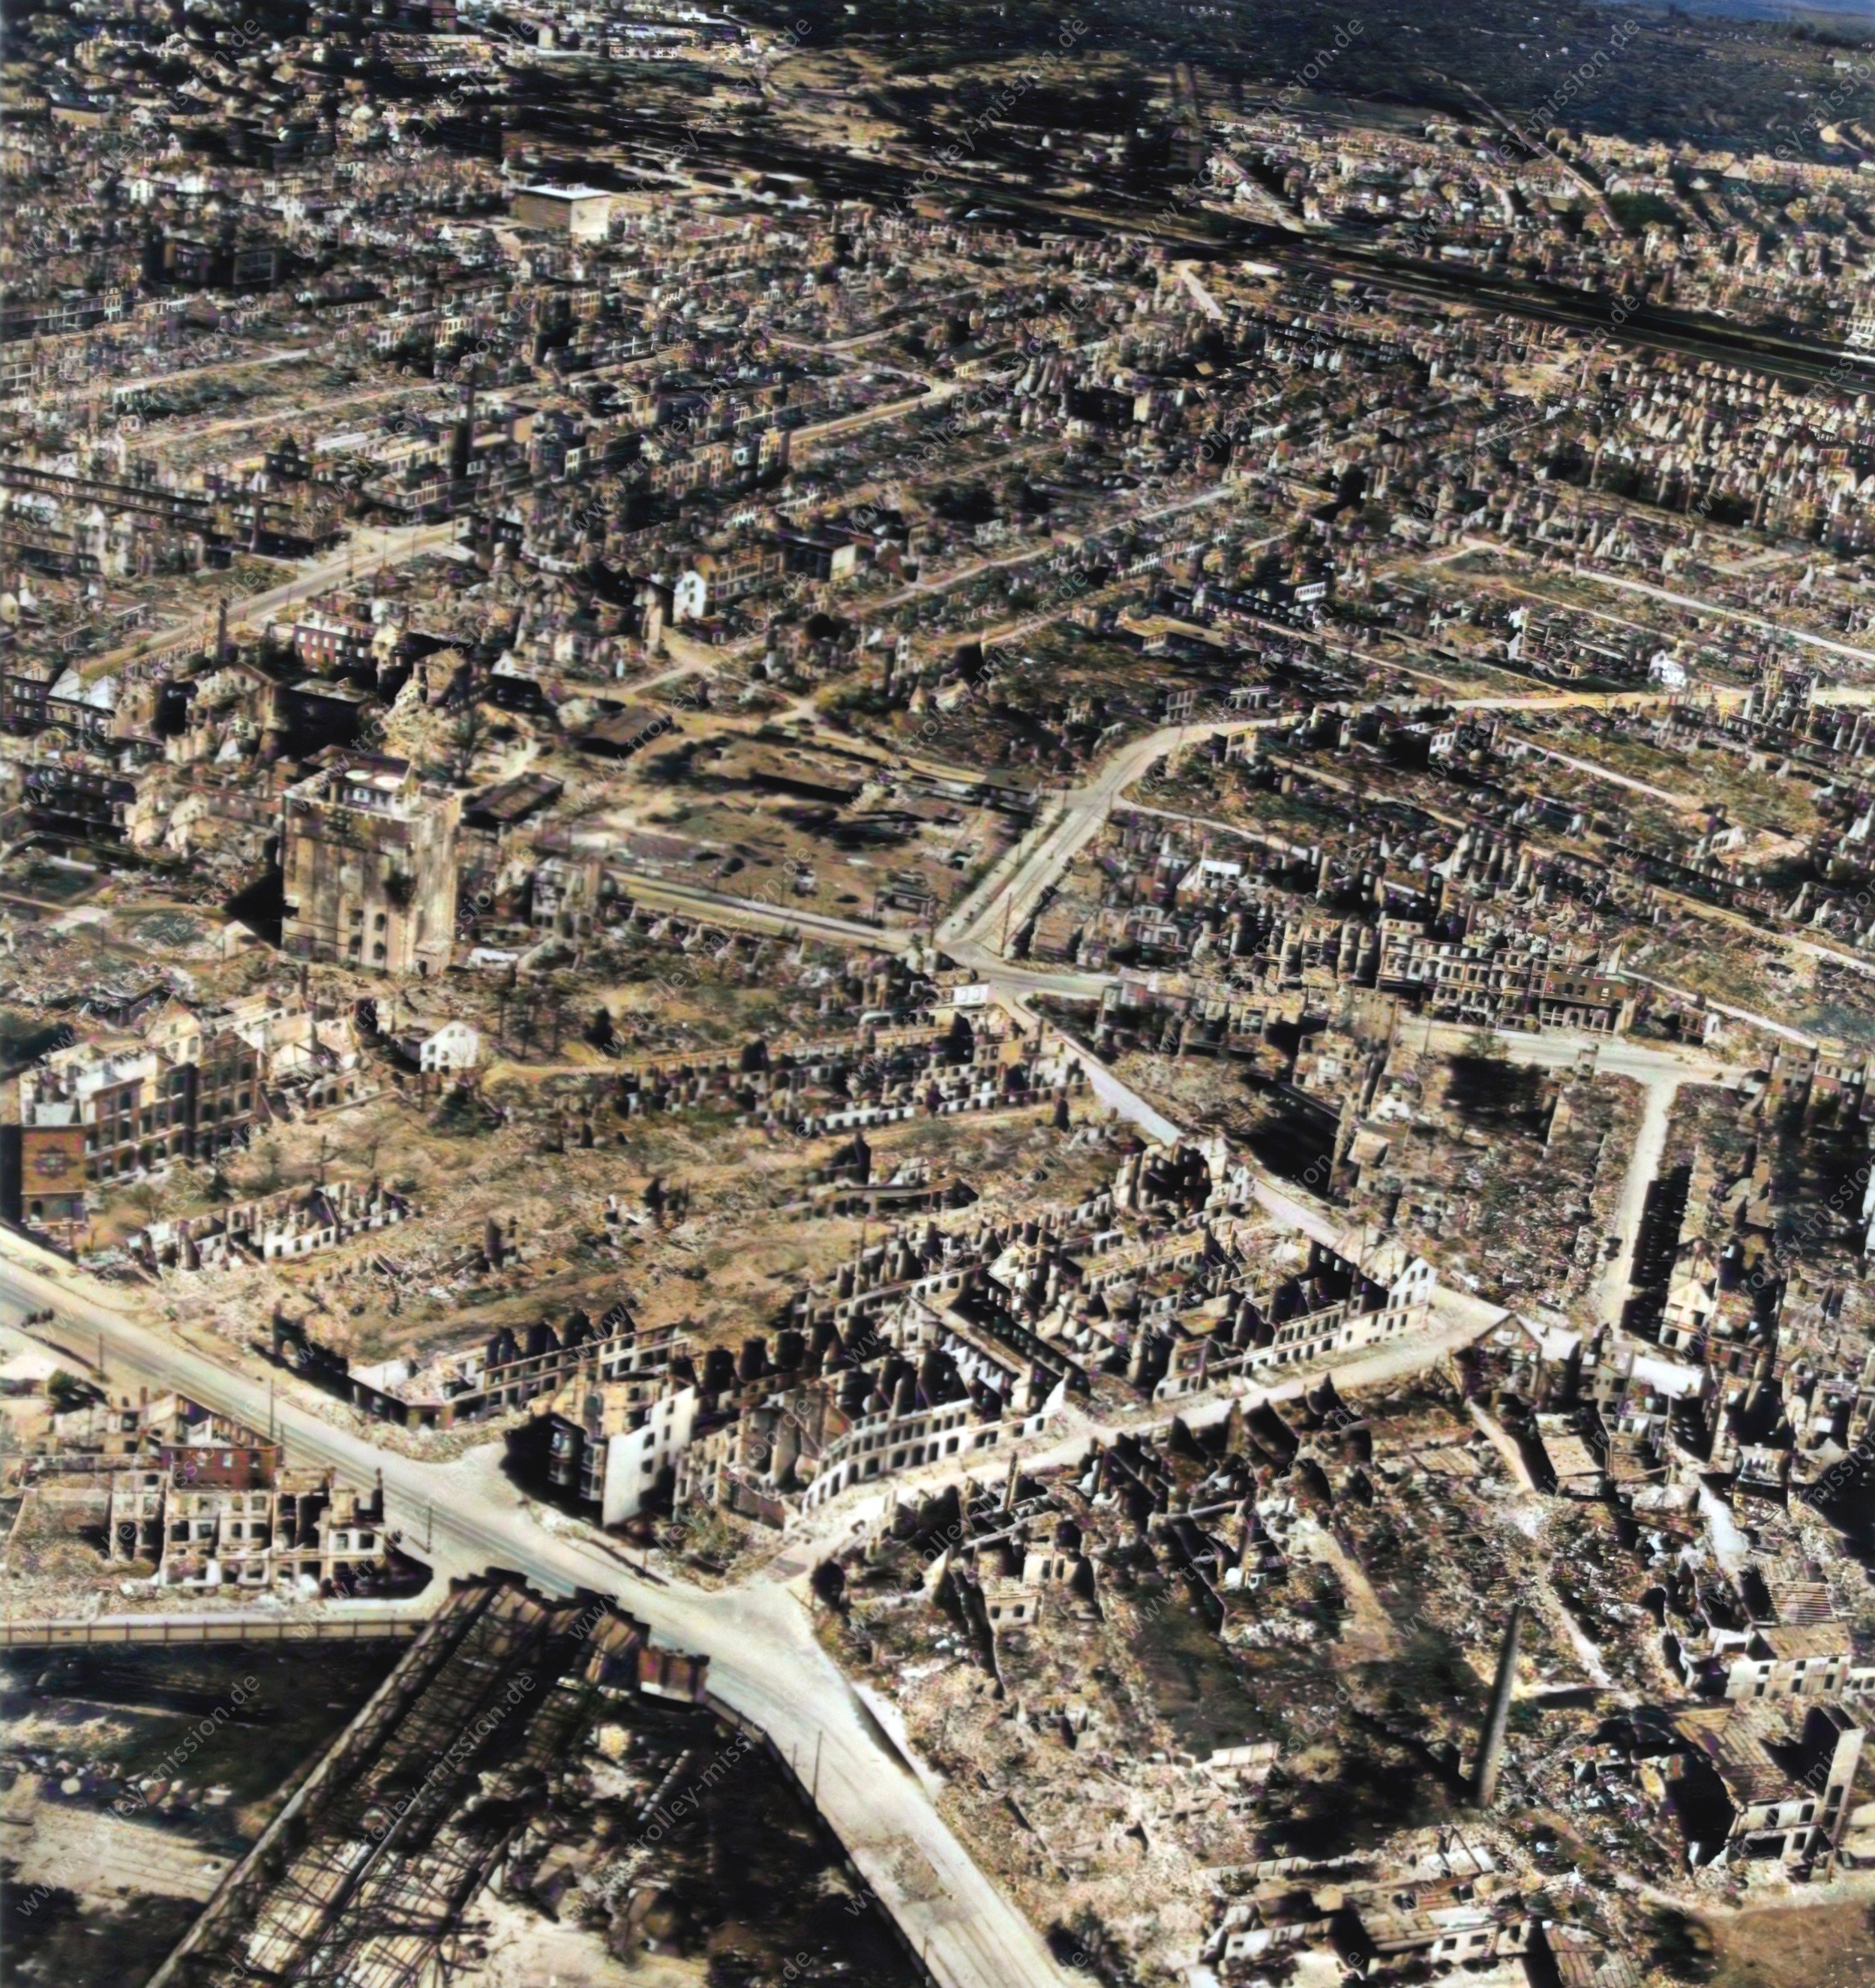 Luftbild Diakonissenbunker Bremen nach künstlicher Kolorierung